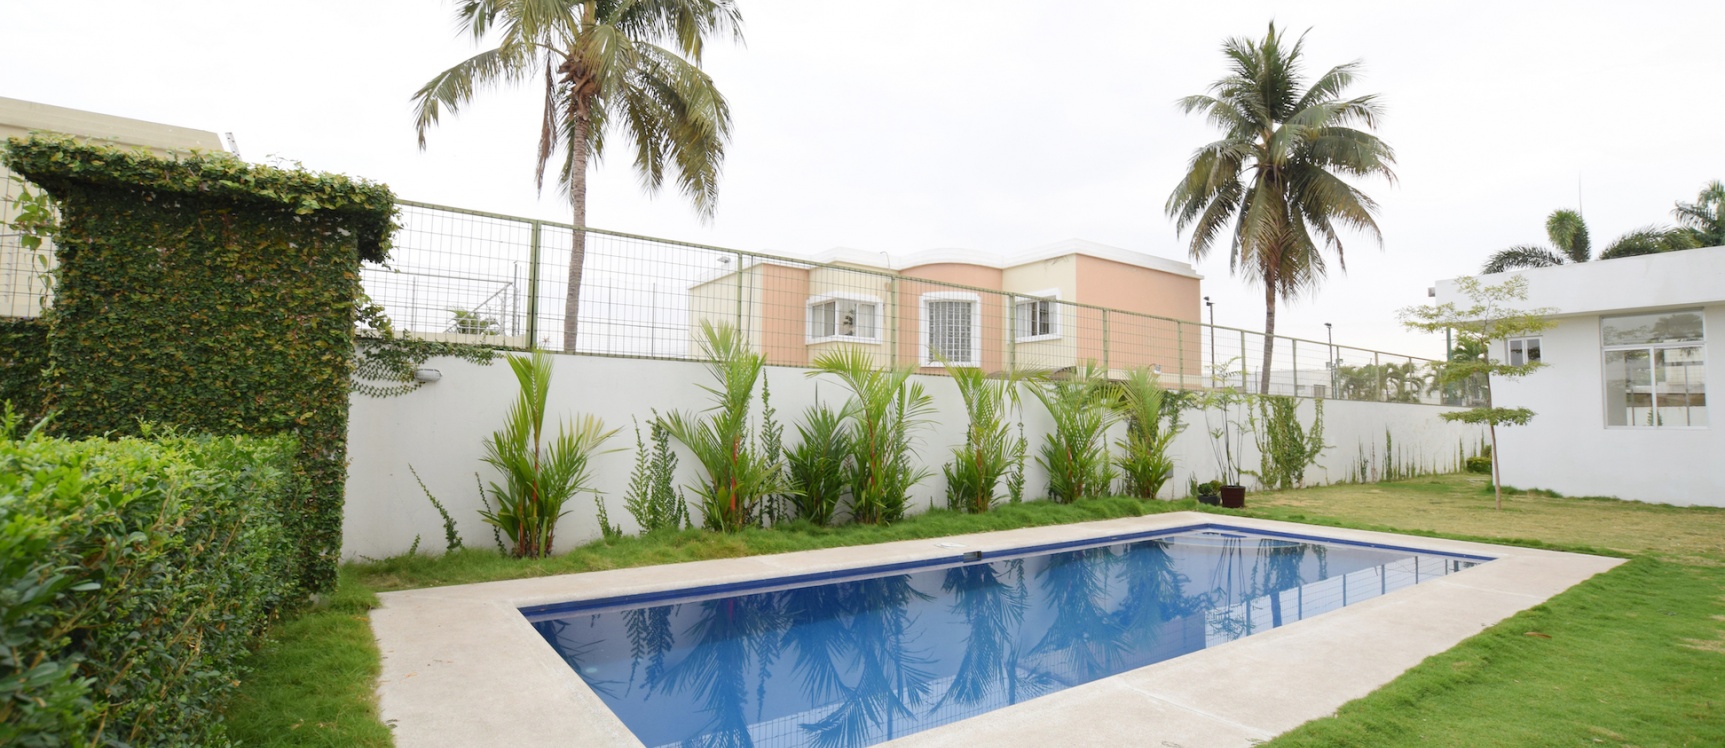 GeoBienes - Departamento en alquiler en Montelimar II, Vía Samborondón - Plusvalia Guayaquil Casas de venta y alquiler Inmobiliaria Ecuador